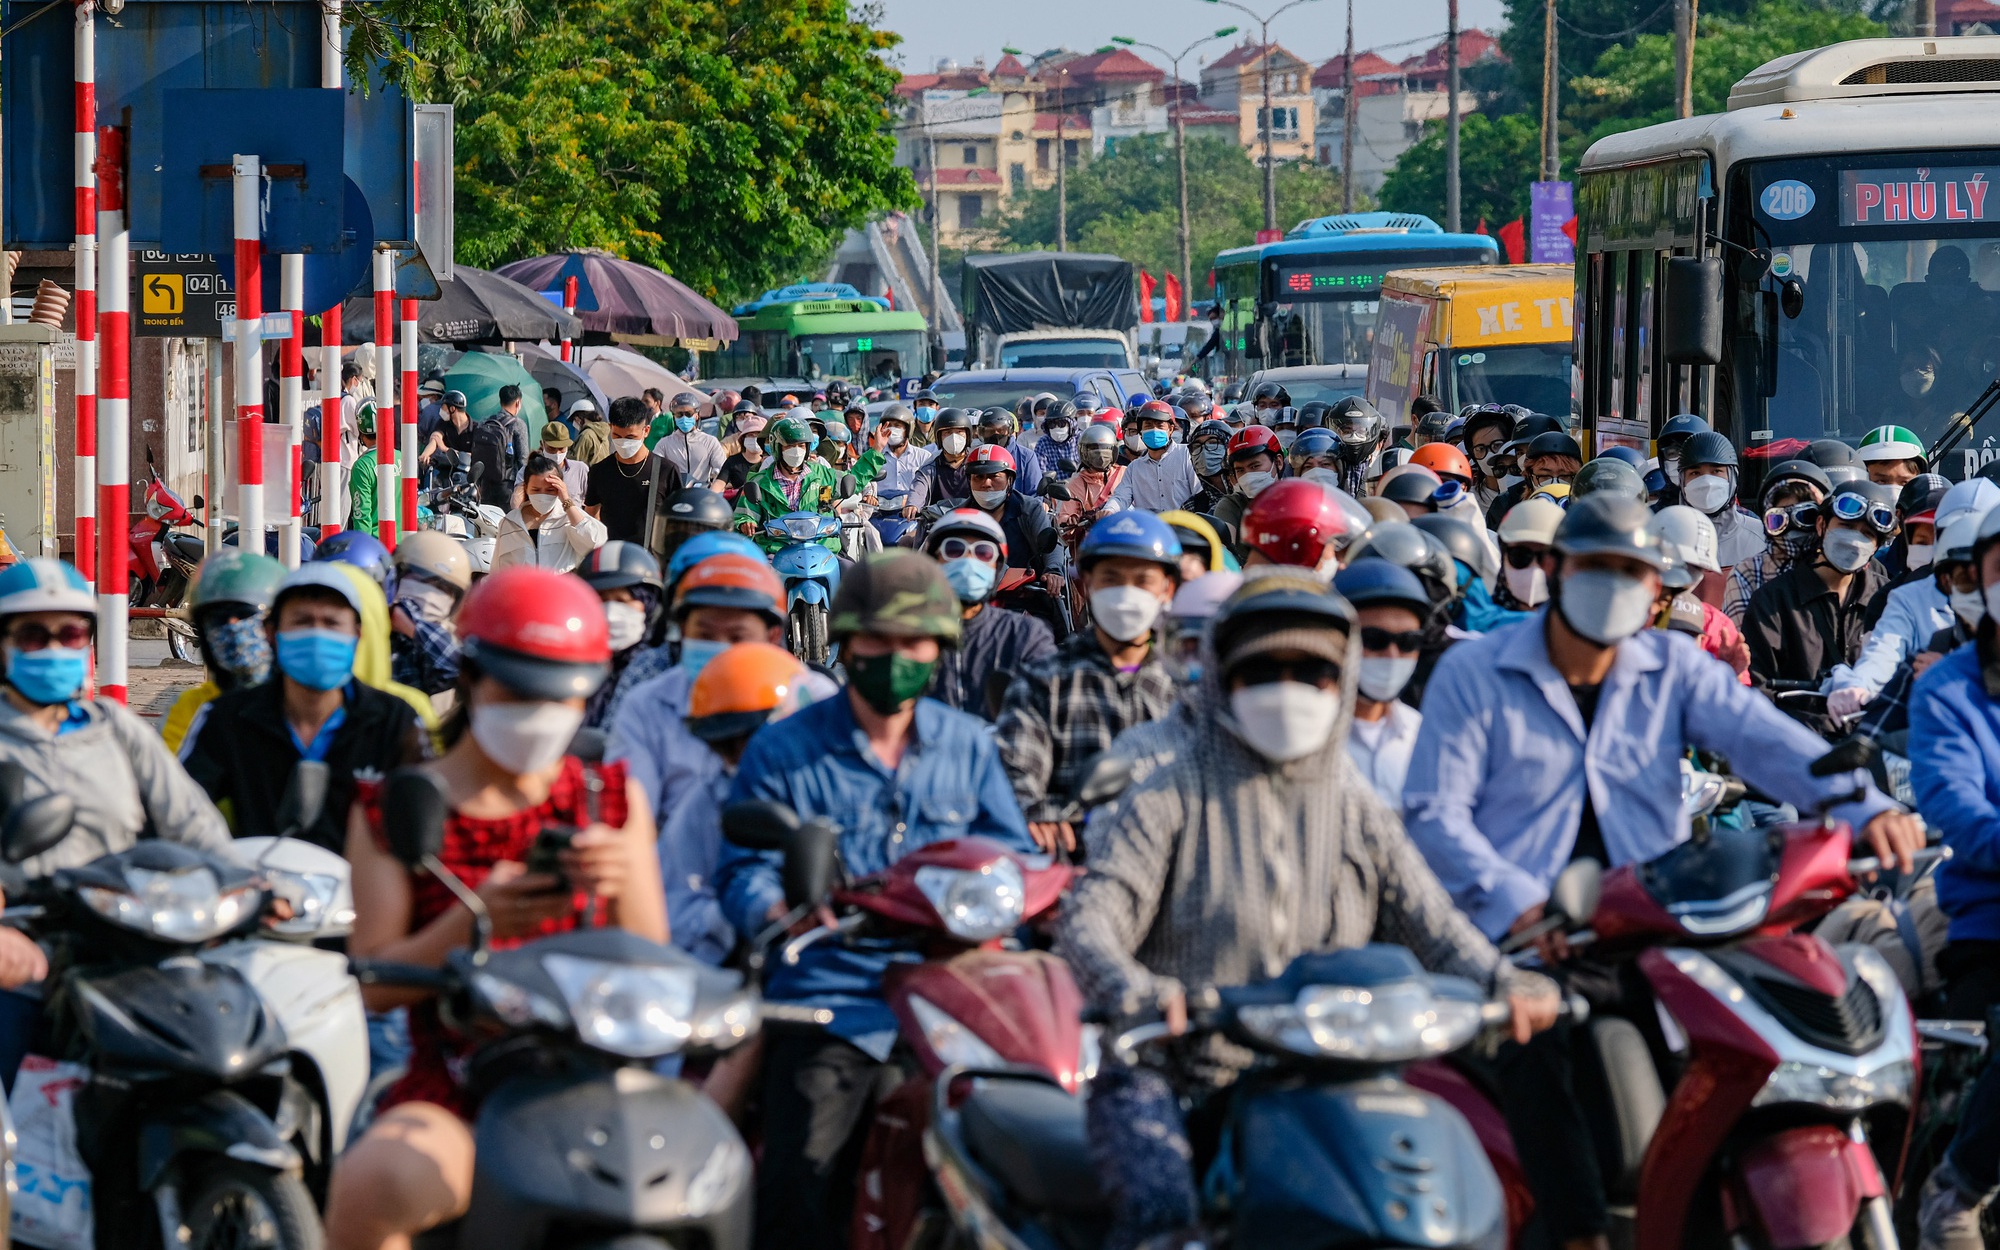 Người dân ùn ùn quay trở lại Hà Nội dù chưa kết thúc kỳ nghỉ lễ vì nỗi sợ tắc đường, giao thông khu vực cửa ngõ ùn ứ